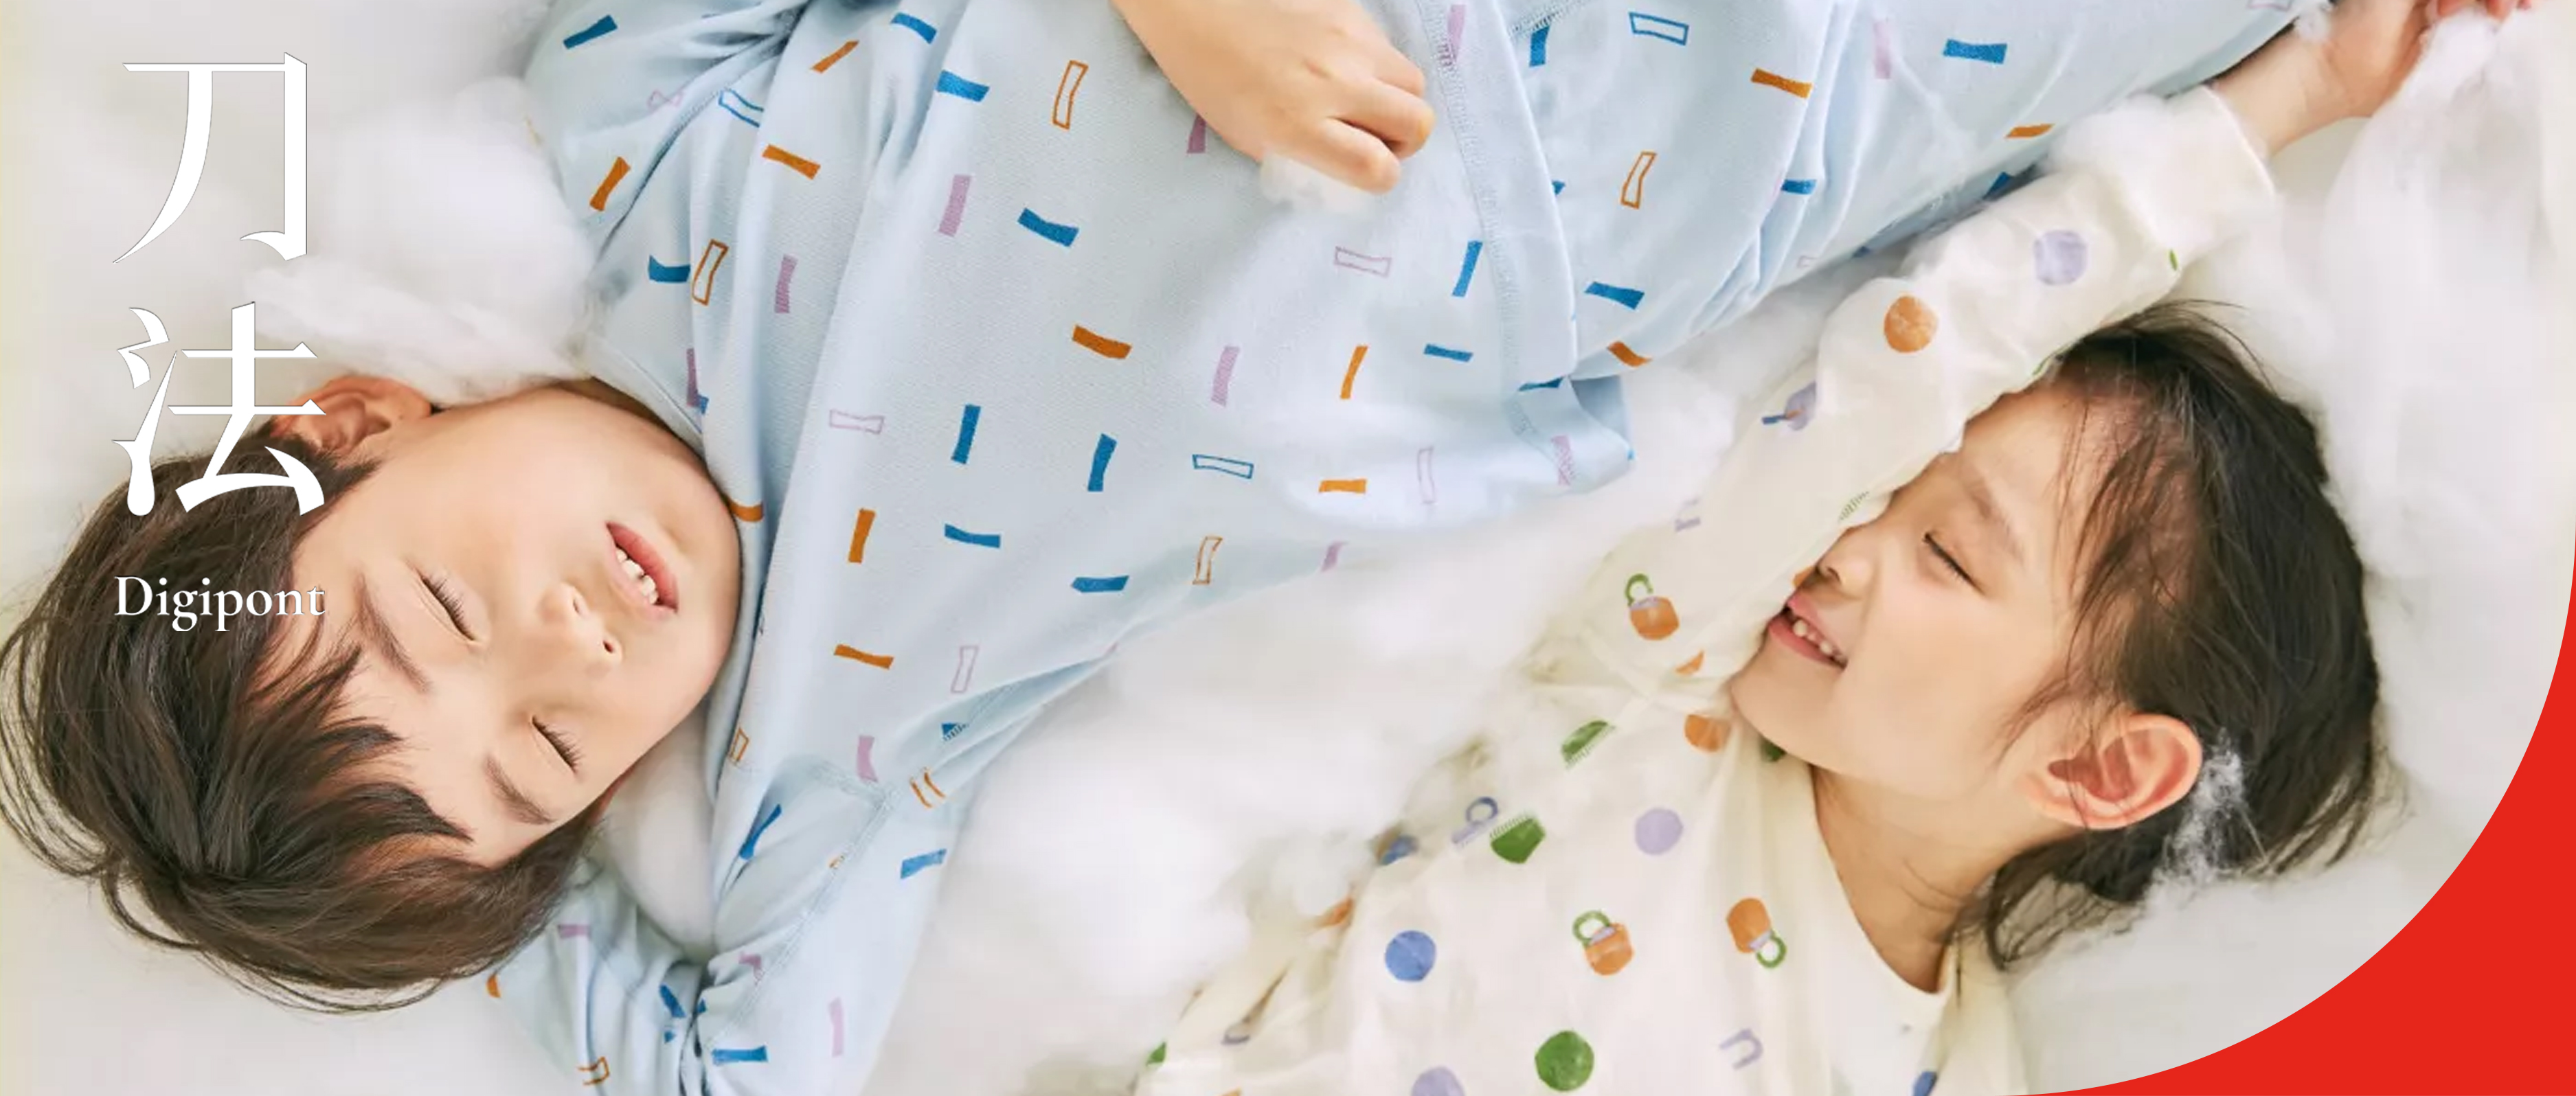 童装品牌“幼岚”发布全新升级的品牌 LOGO - 4A广告网